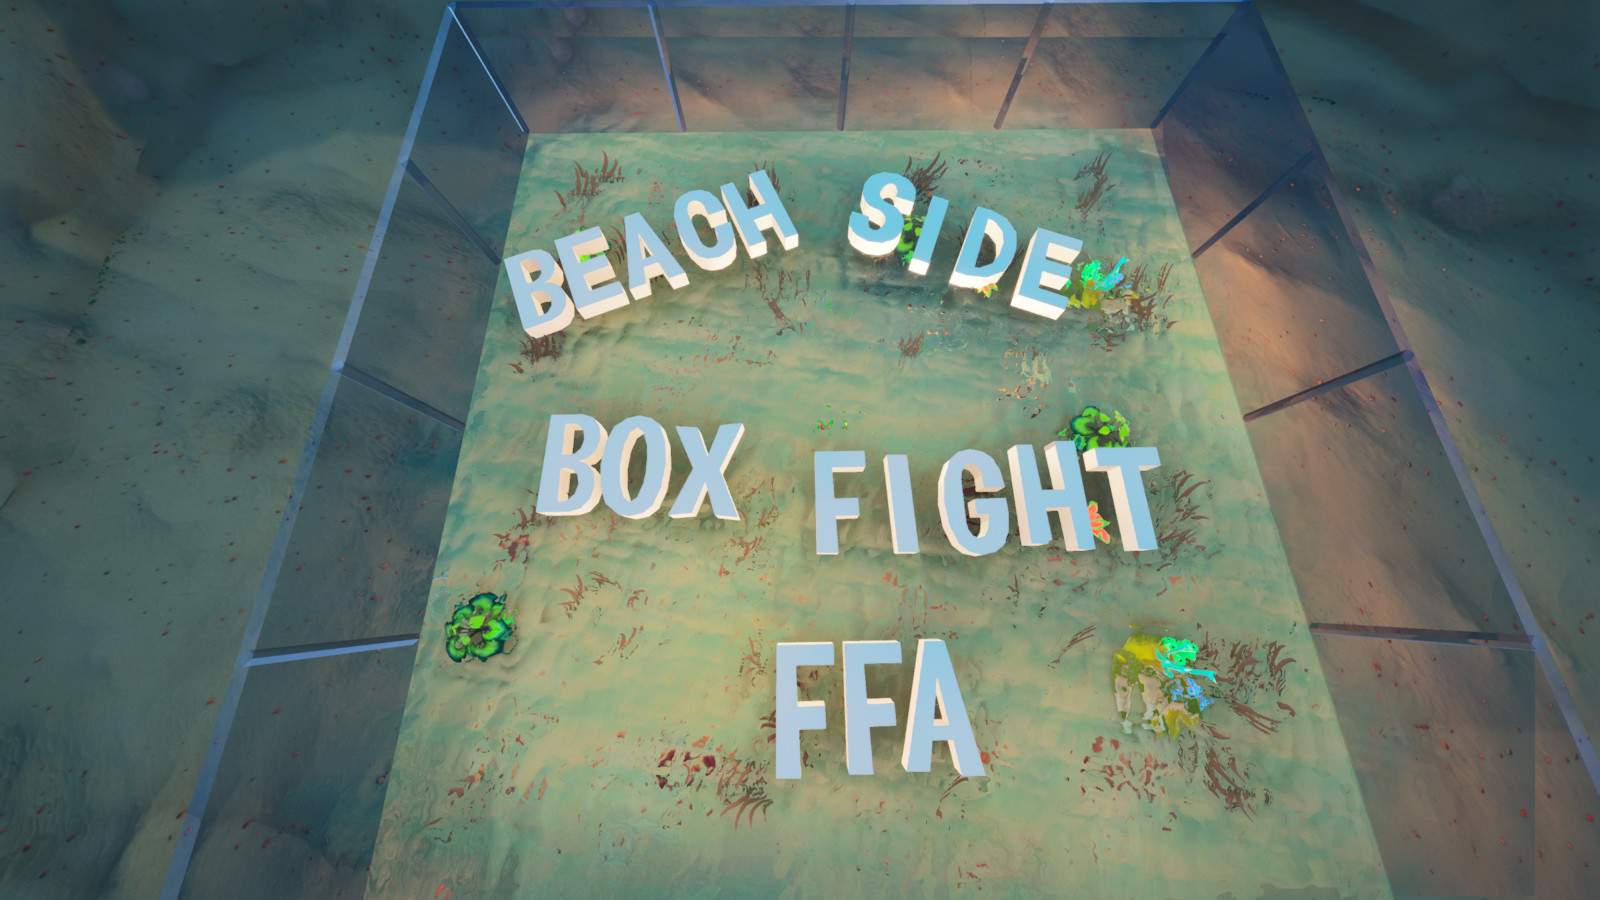 BEACH SIDE BOX FIGHT FFA